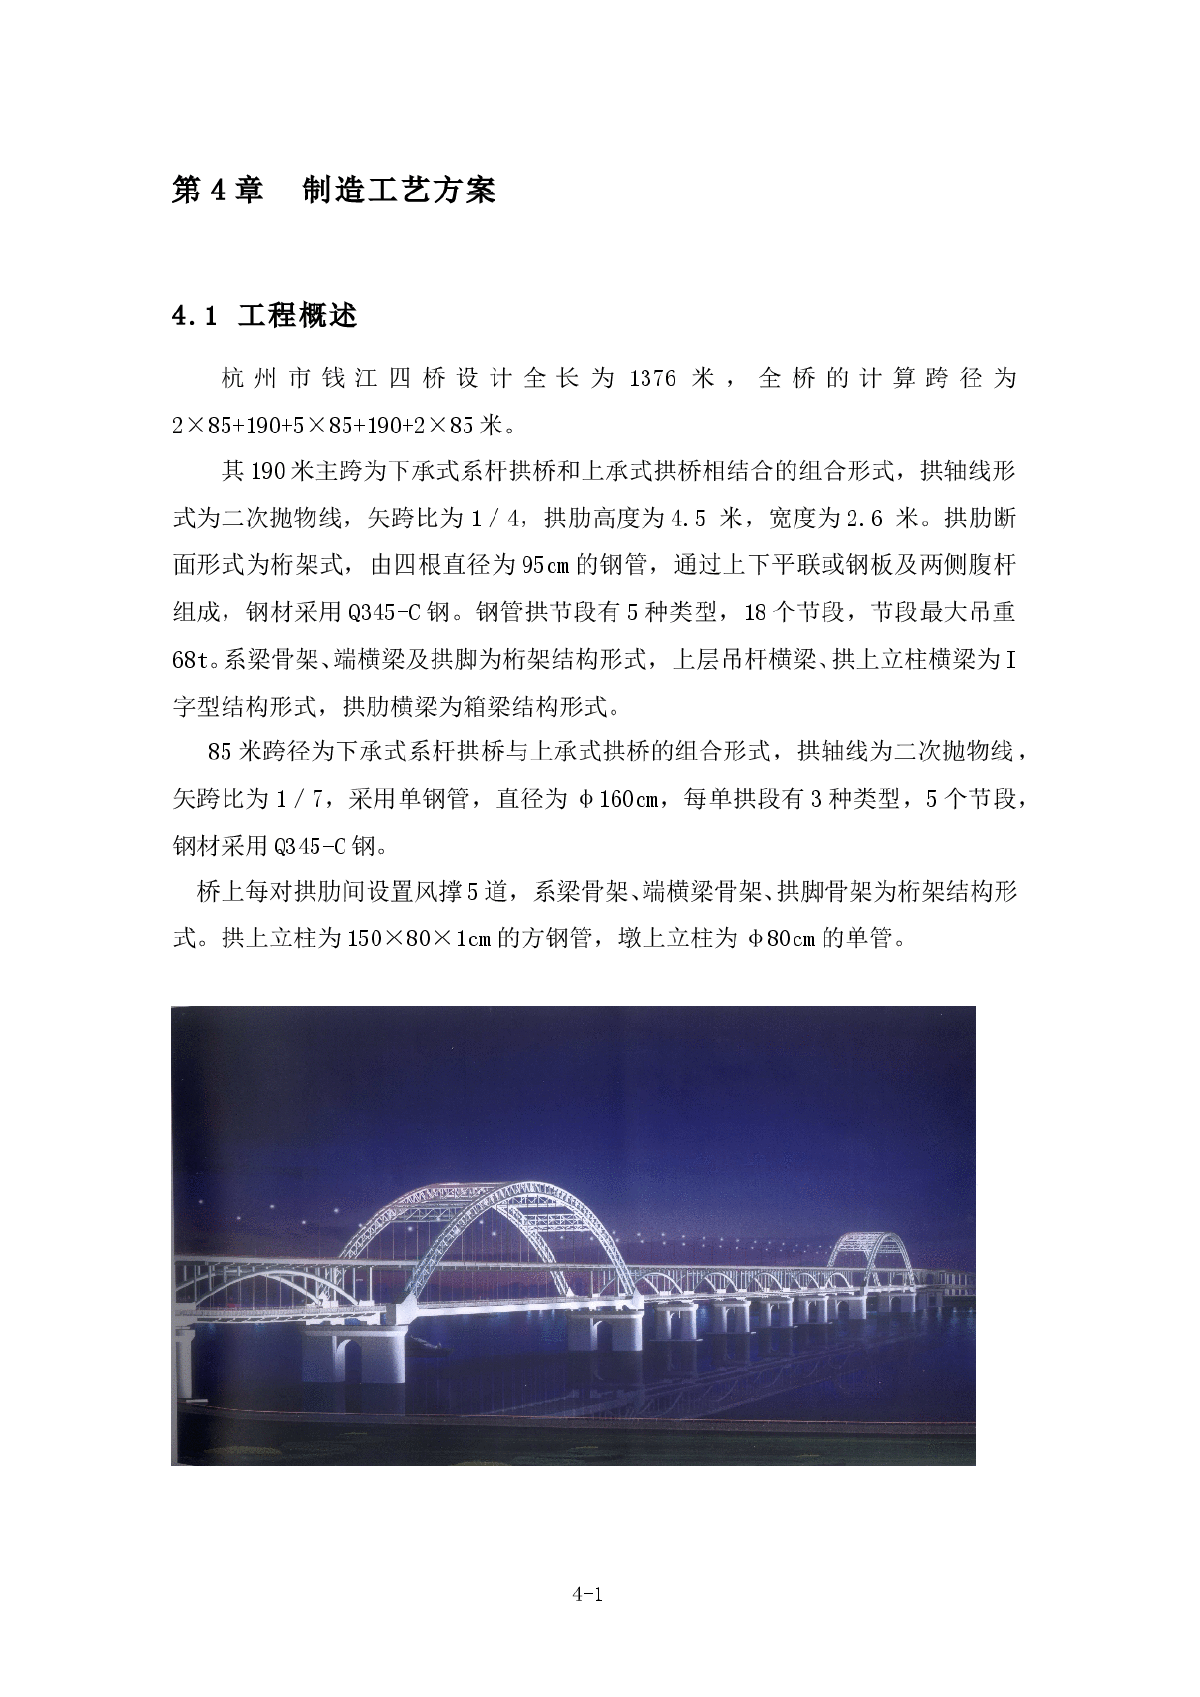 杭州钱塘江四桥钢管拱制造工艺方案